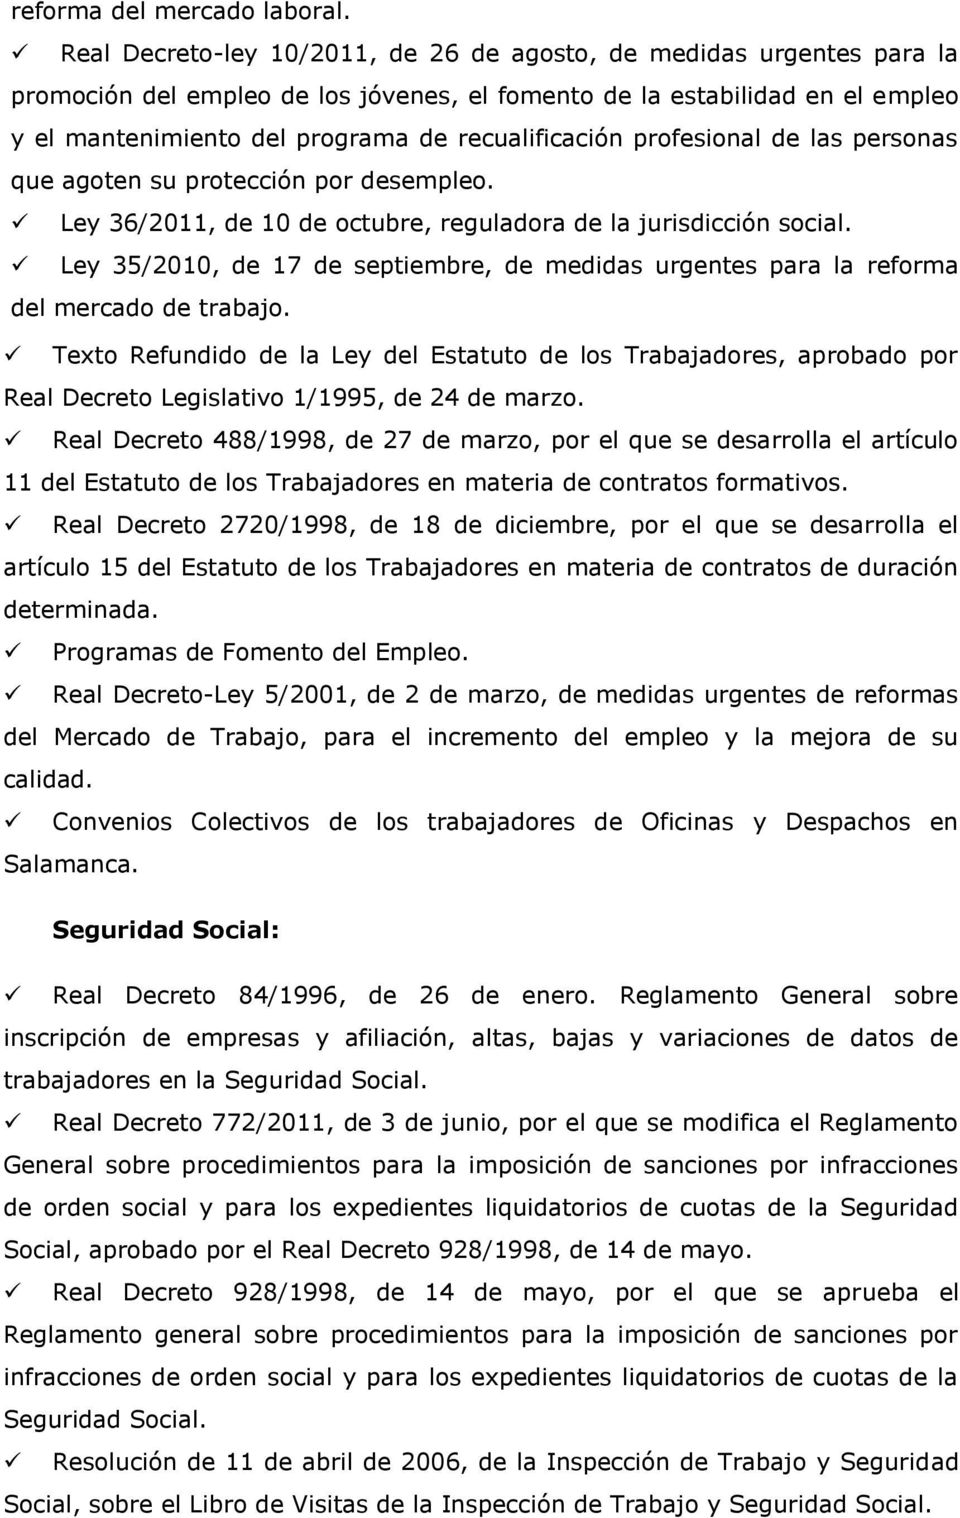 recualificación profesional de las personas que agoten su protección por desempleo. Ley 36/2011, de 10 de octubre, reguladora de la jurisdicción social.